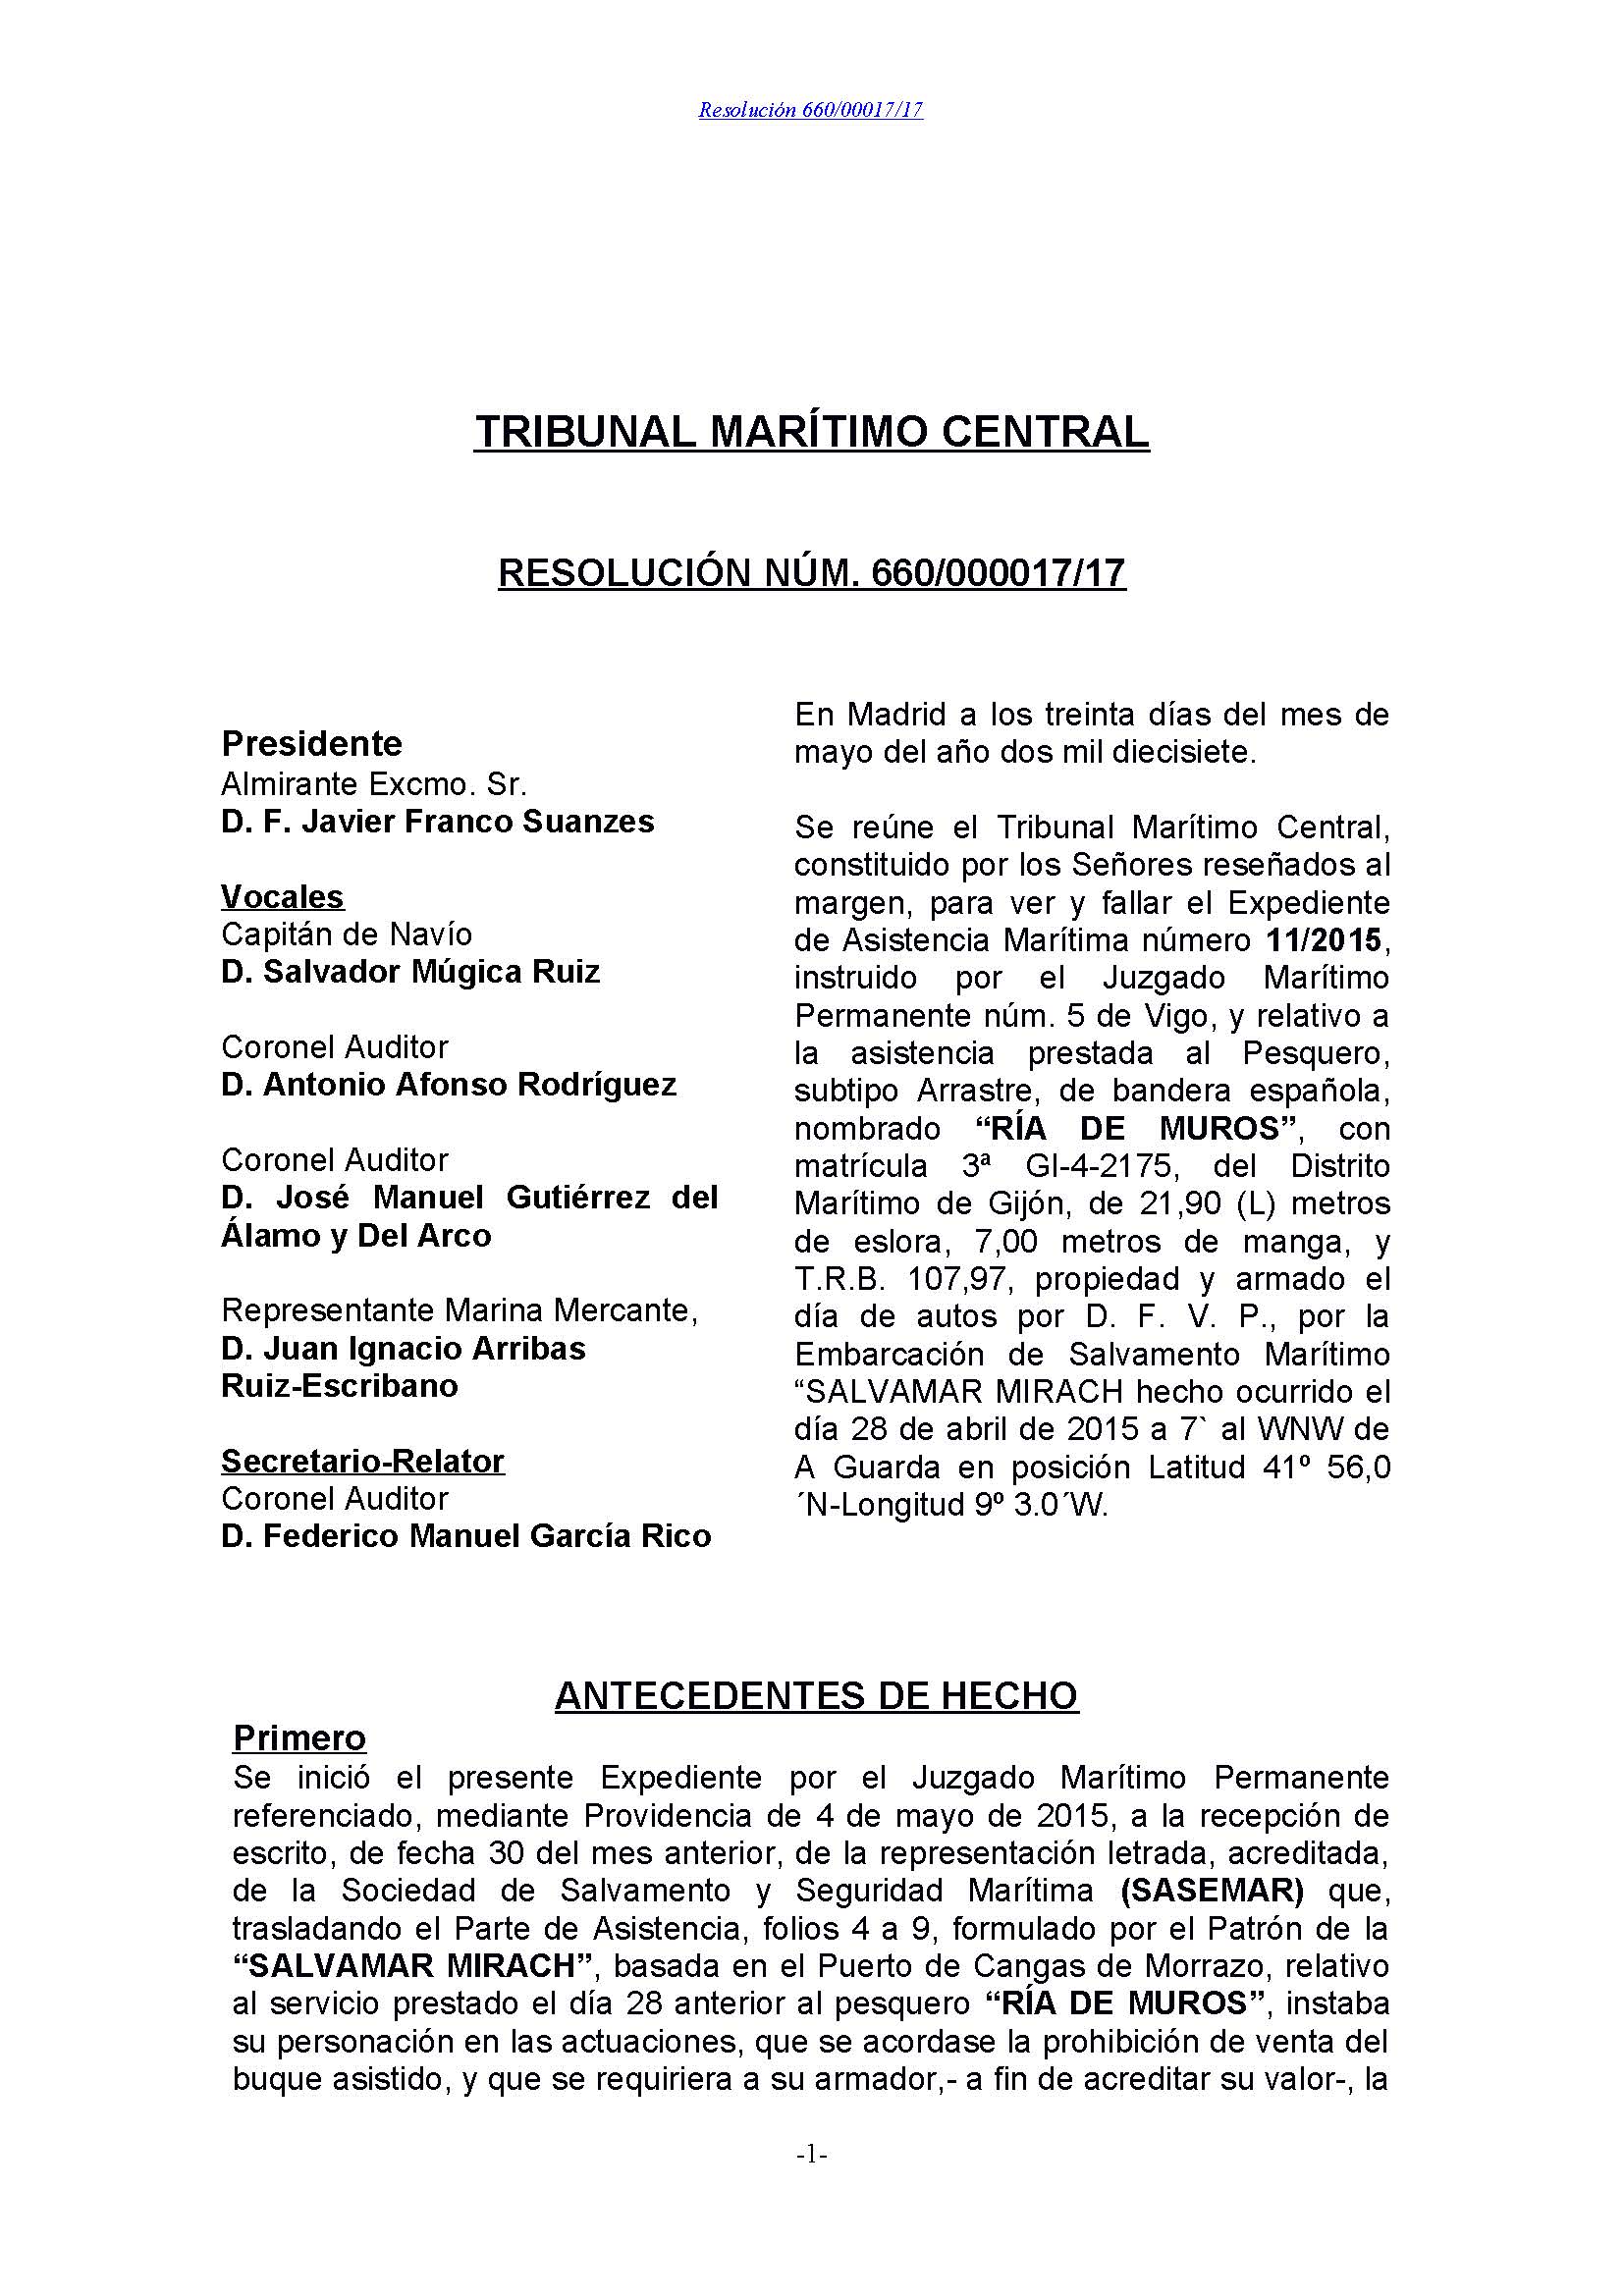 RESOLUCIÓN NÚM. 660/000017/17 RÍA DE MUROS